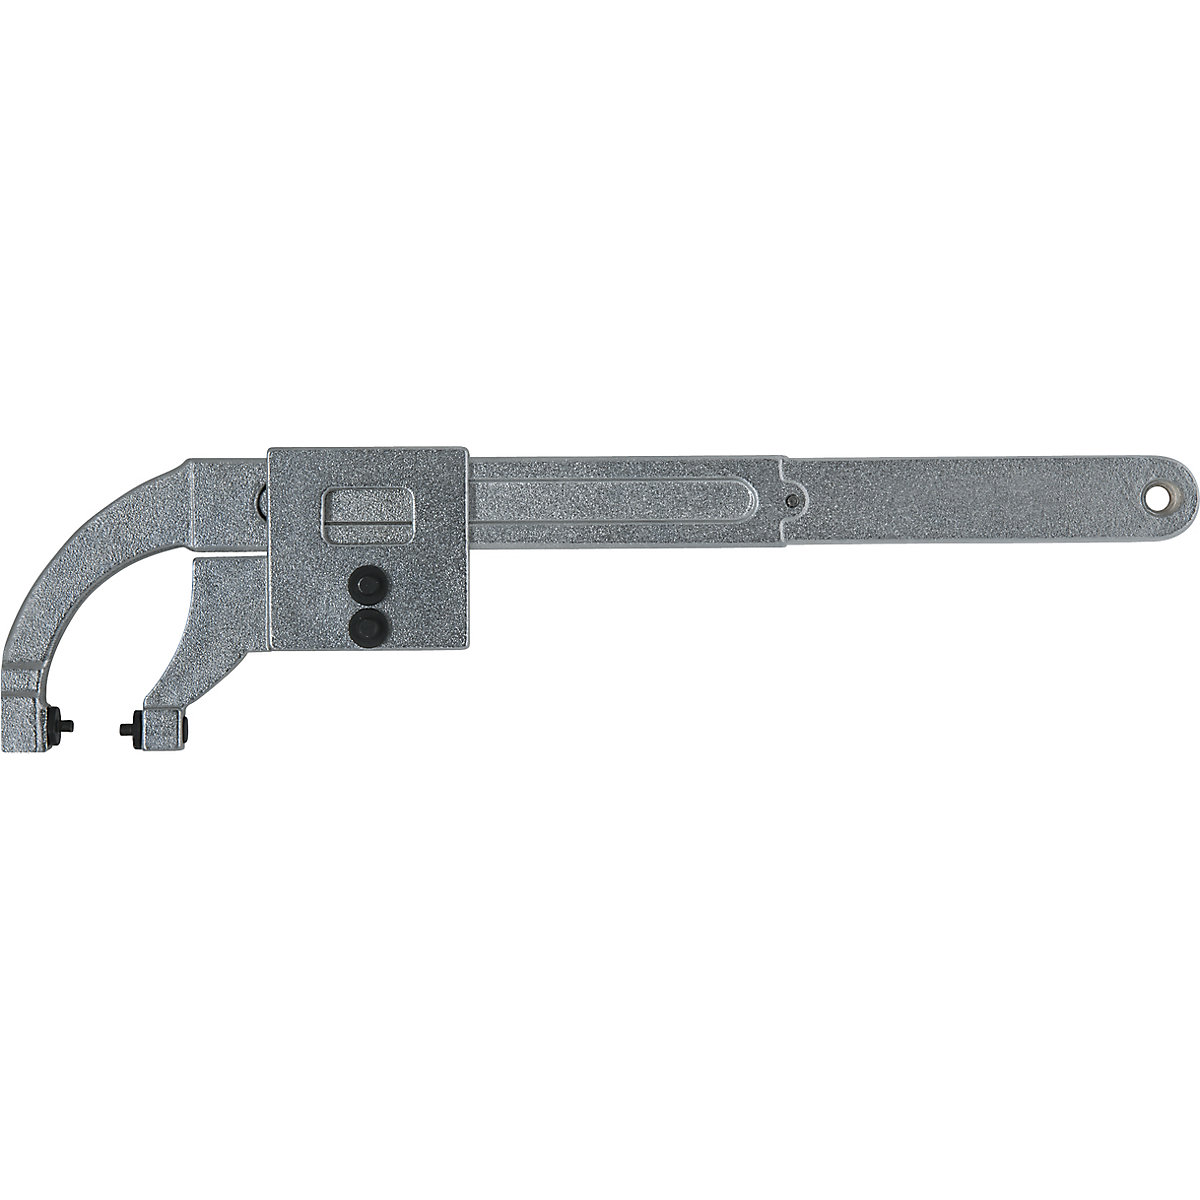 Zgibni kavljast ključ z zatičem – KS Tools (Slika izdelka 6)-5